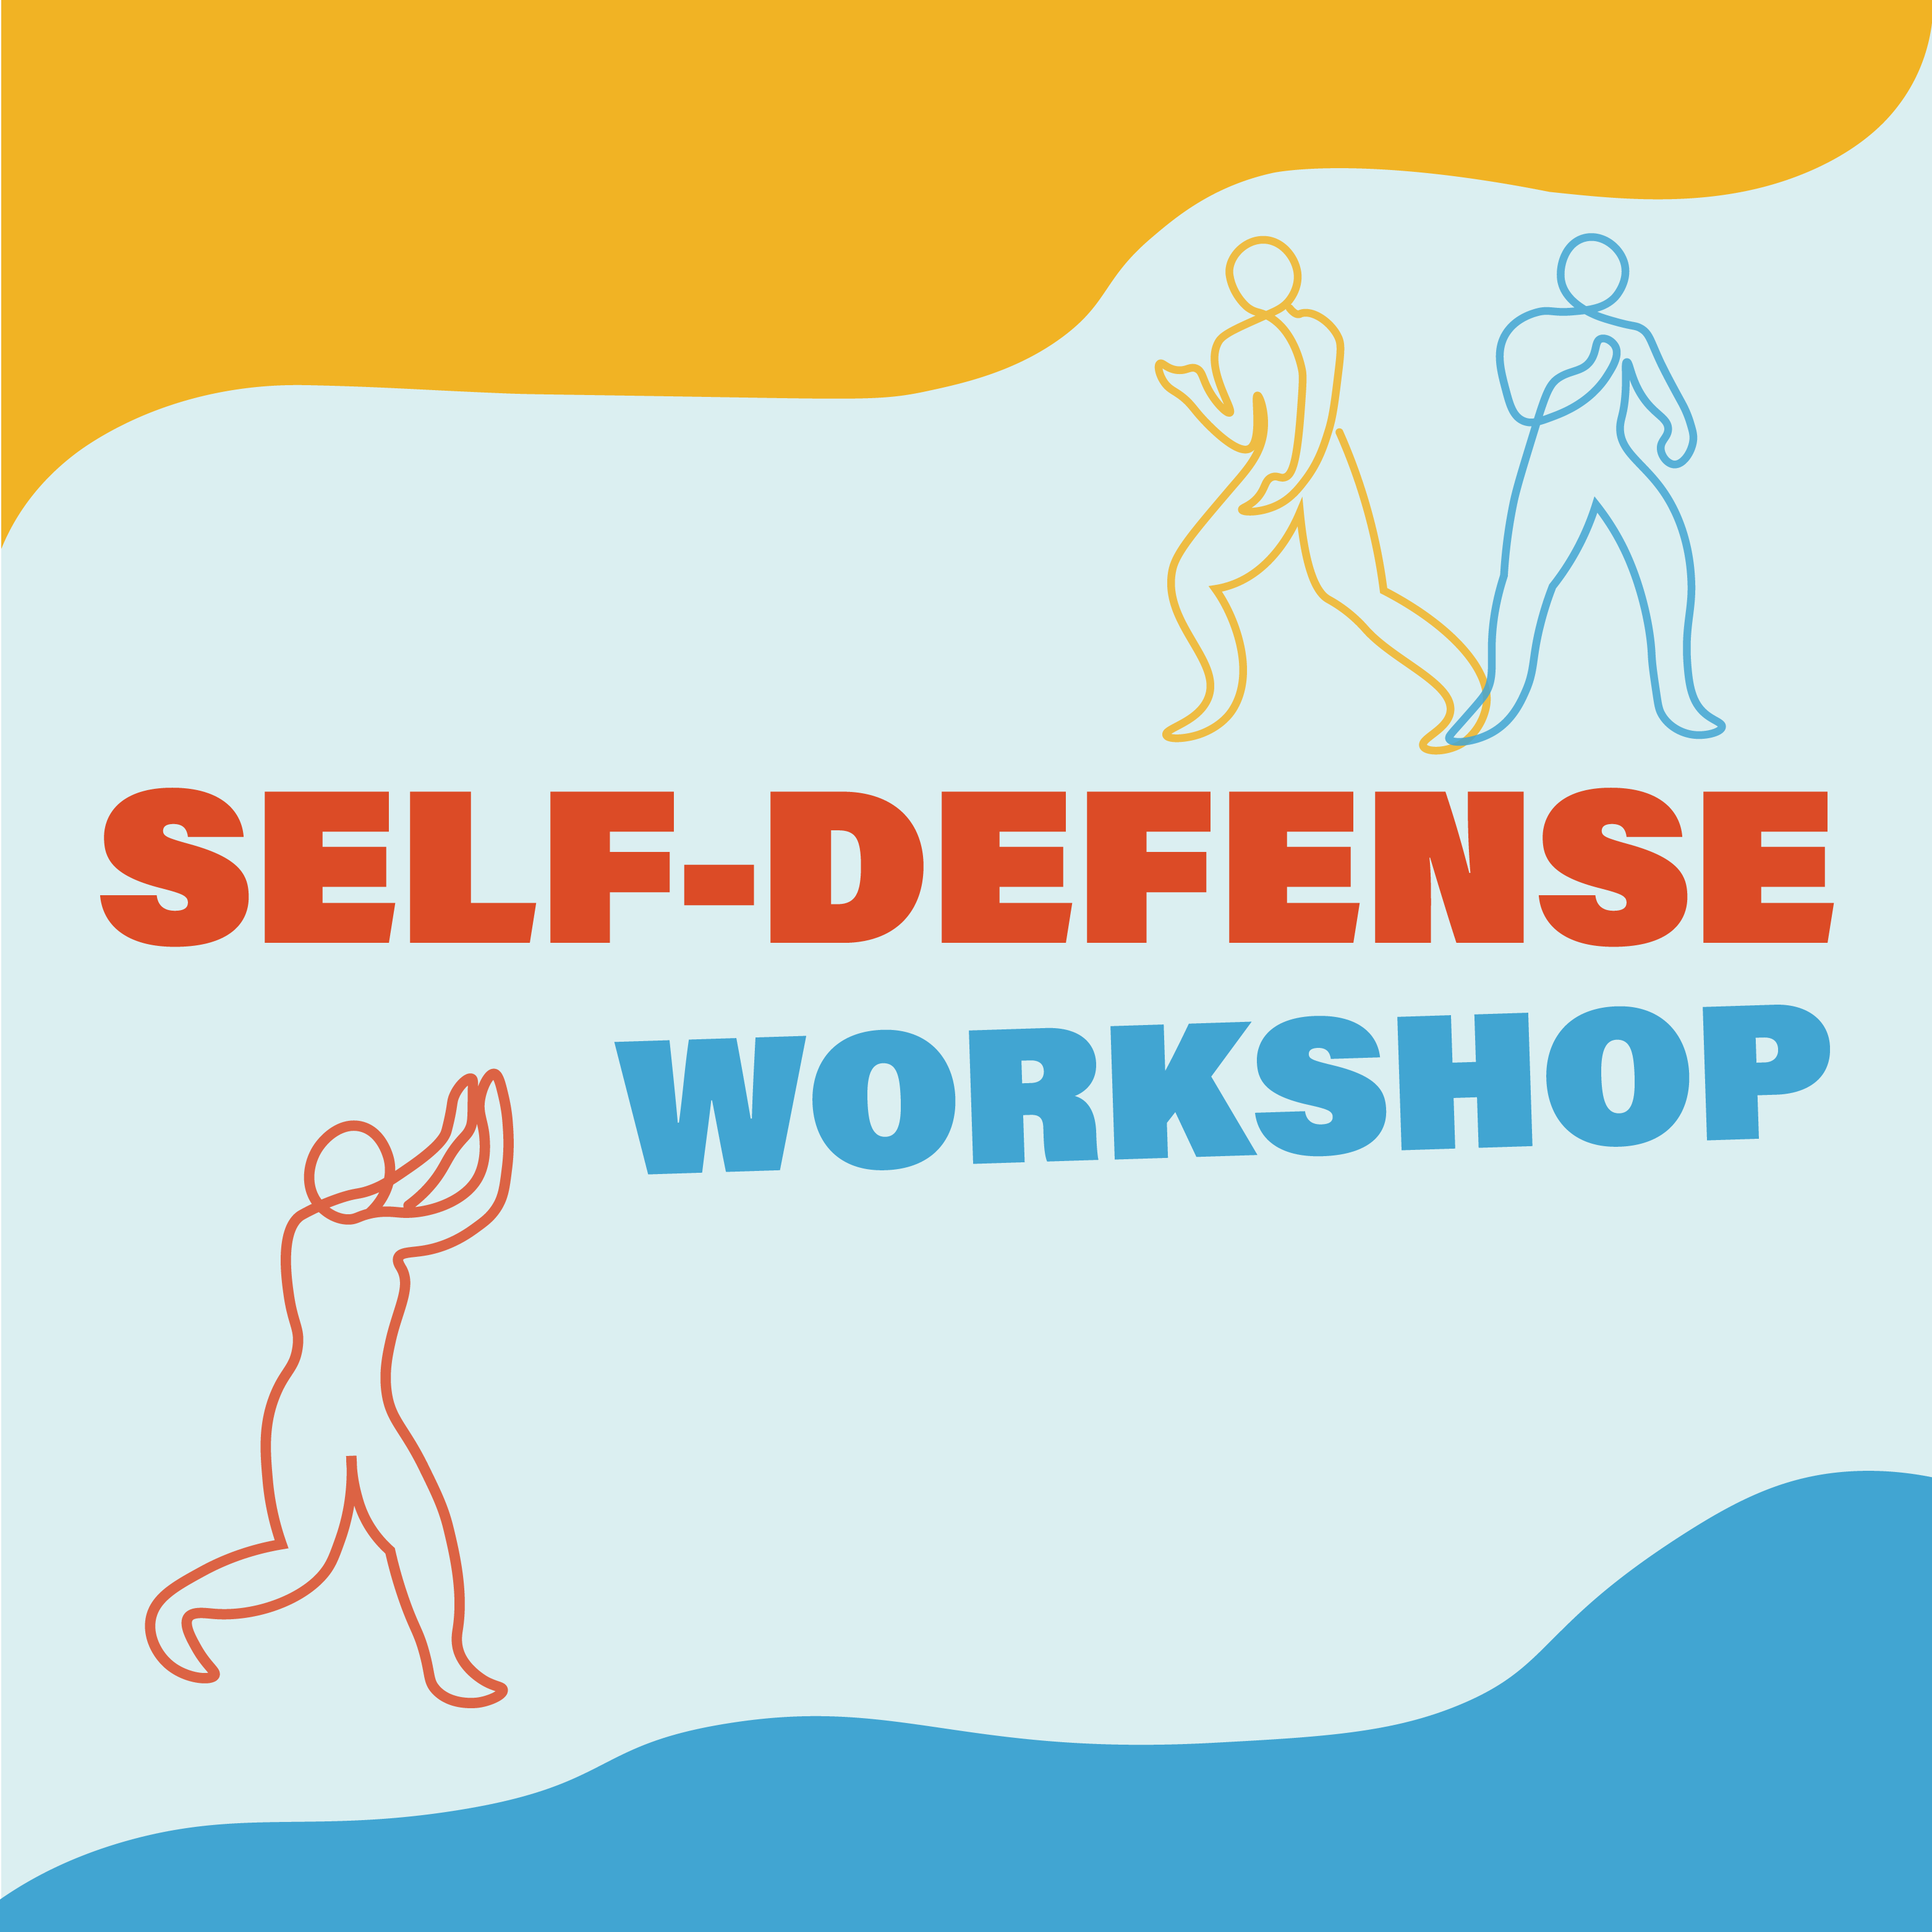 Self-defense workshop